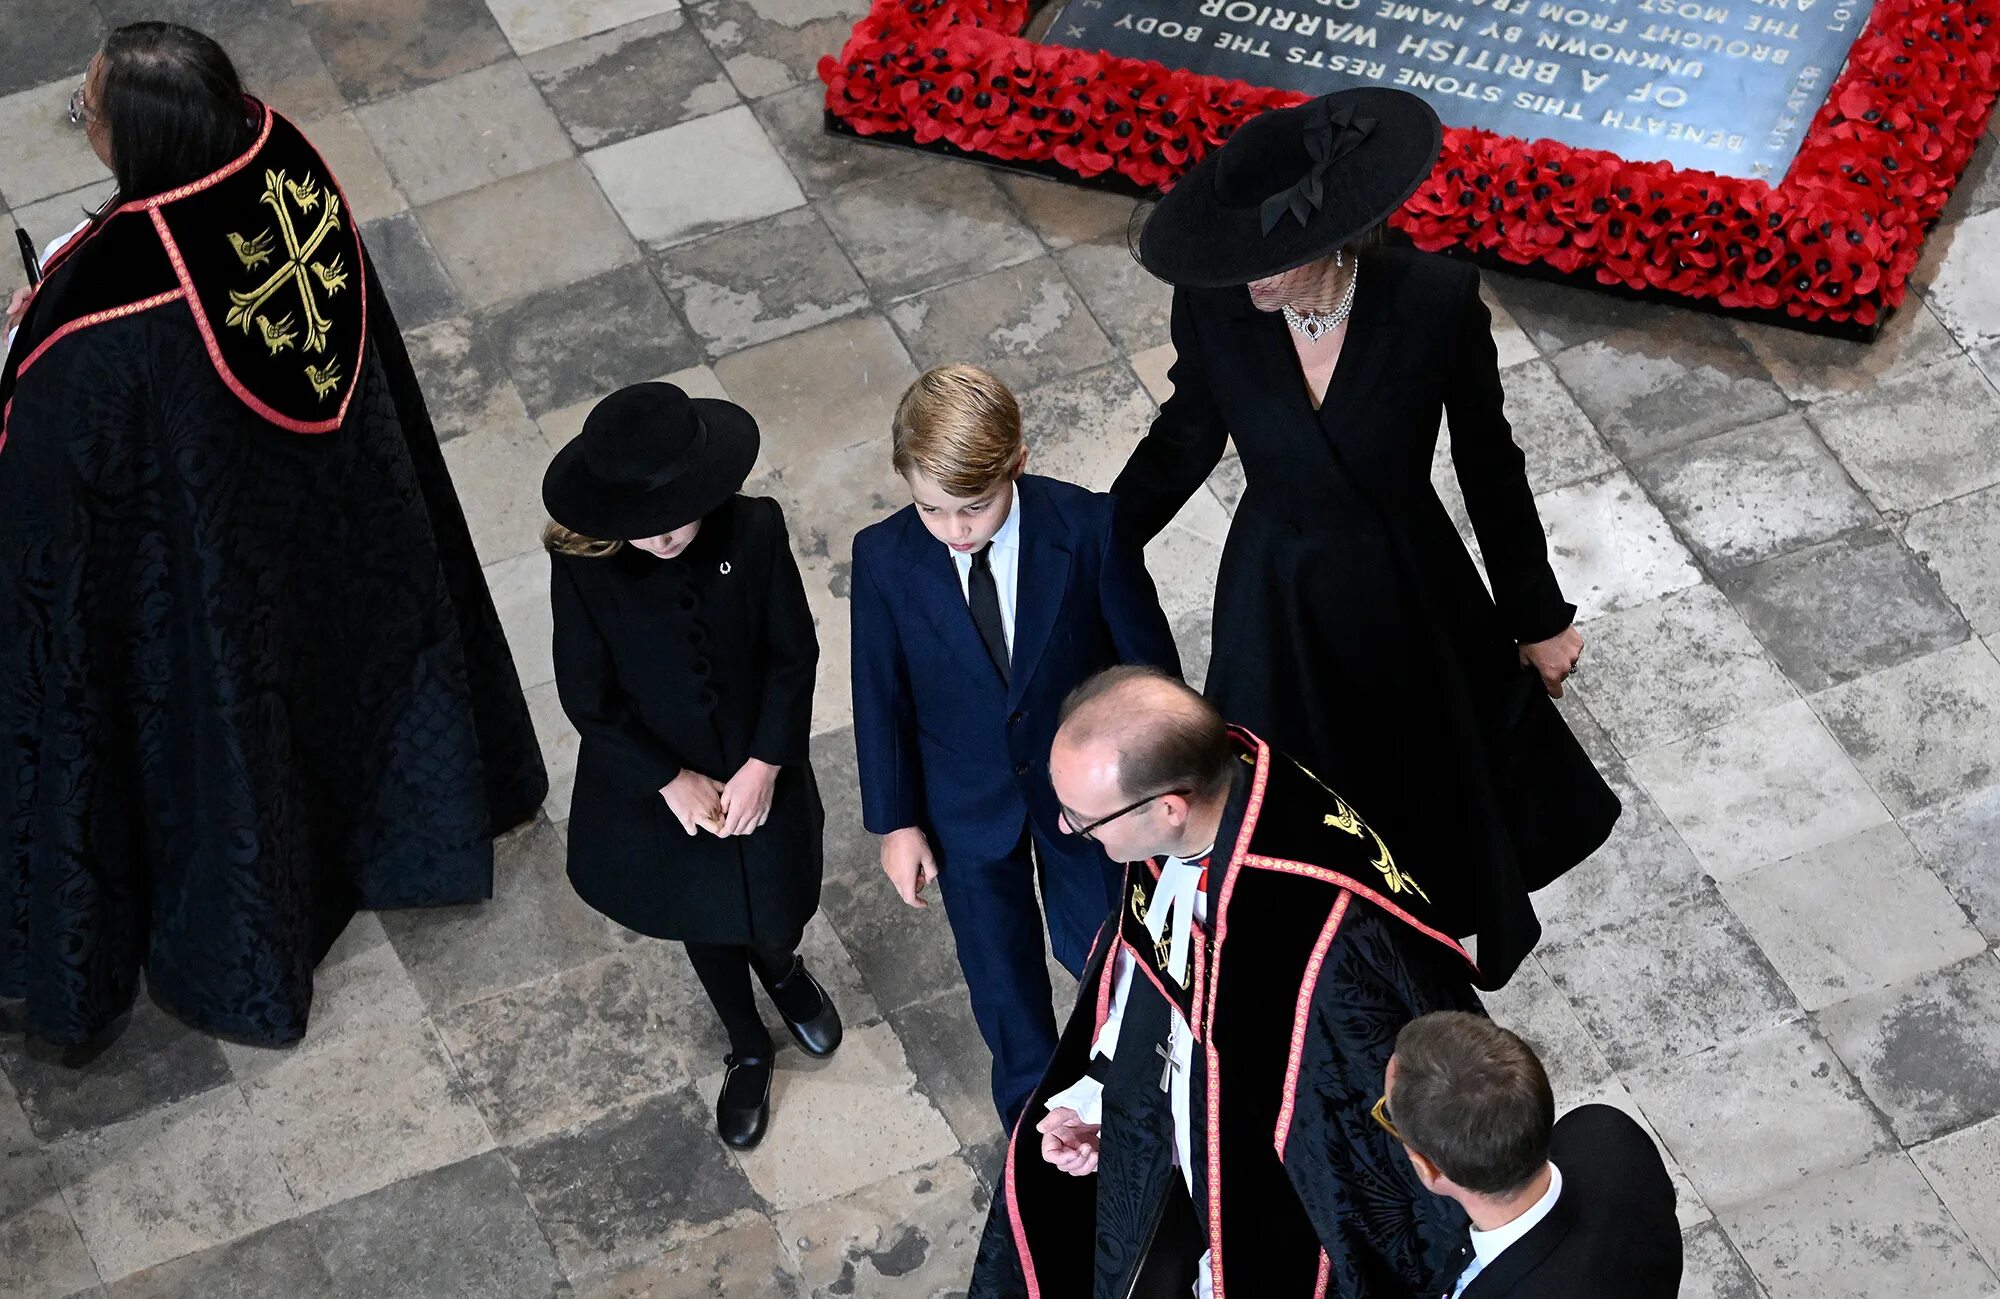 Похороны принцессы. Похороны королевы Елизаветы 2022. Похороны королевы Елизаветы 2022- Кейт Миддлтон. Принц Джордж Уэльский 2022.